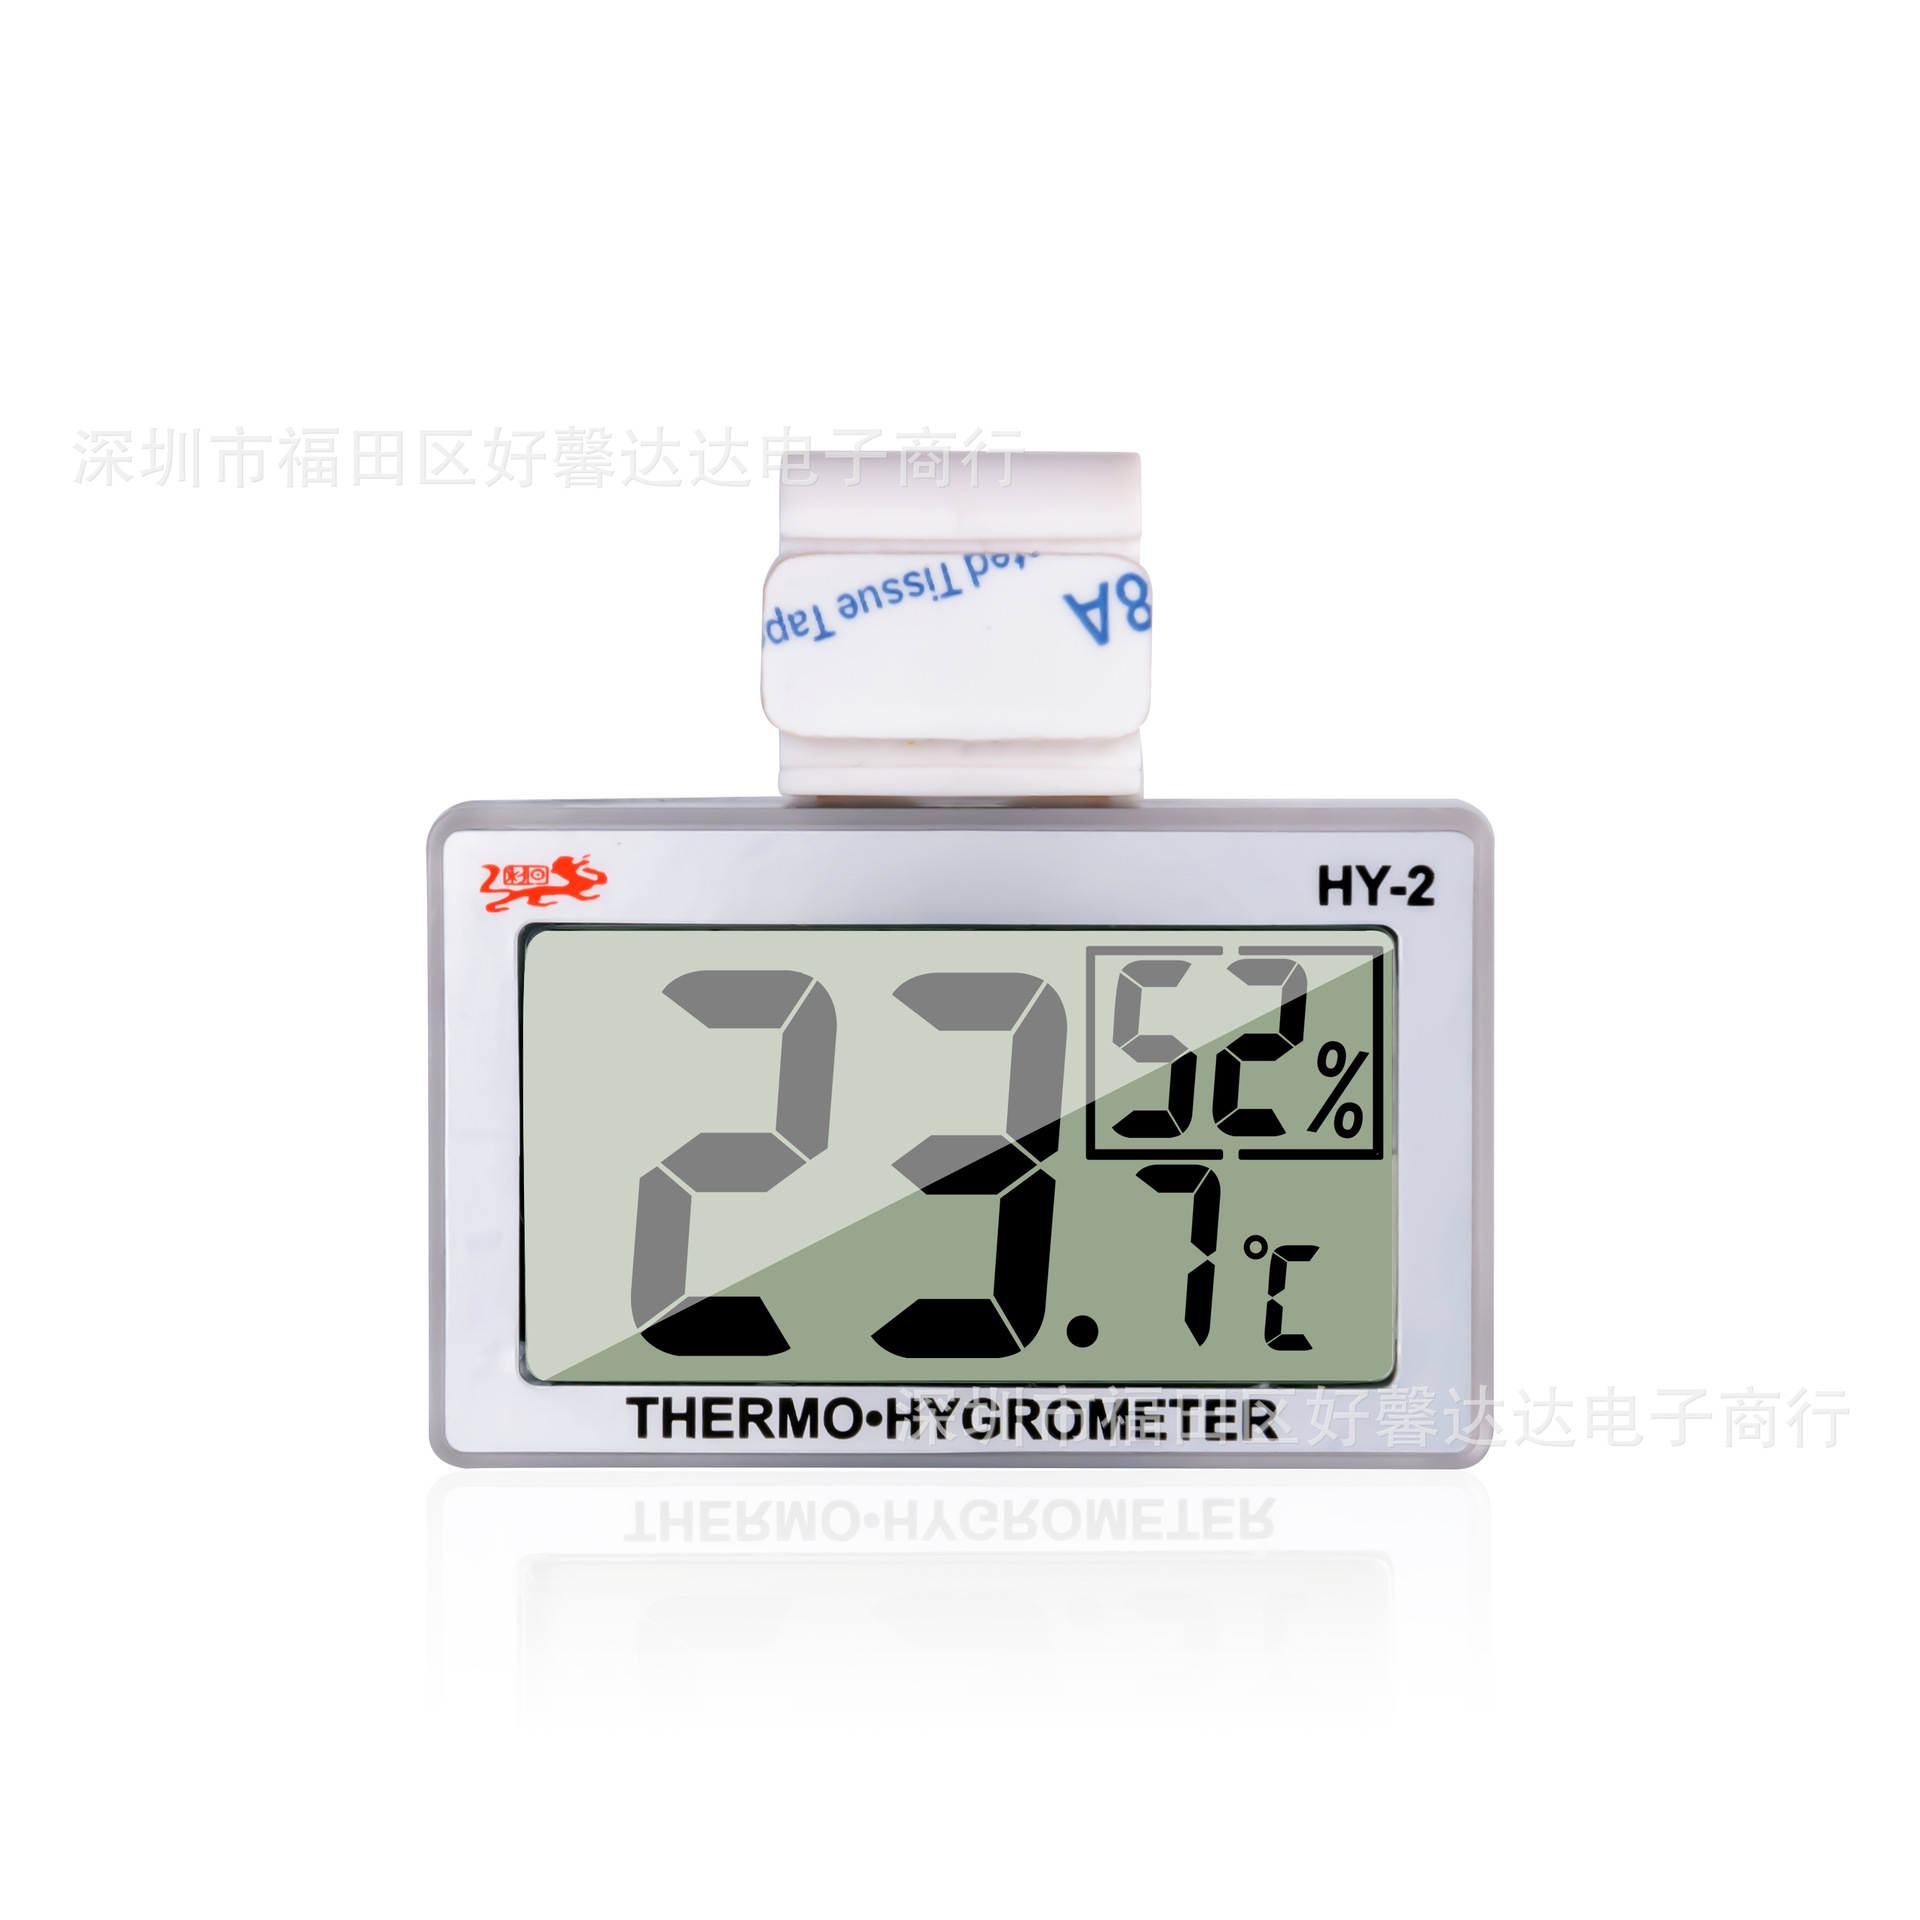 HY-2高精度挂式厨房冰箱温度计 数显温湿度仪表供 应室内温度计